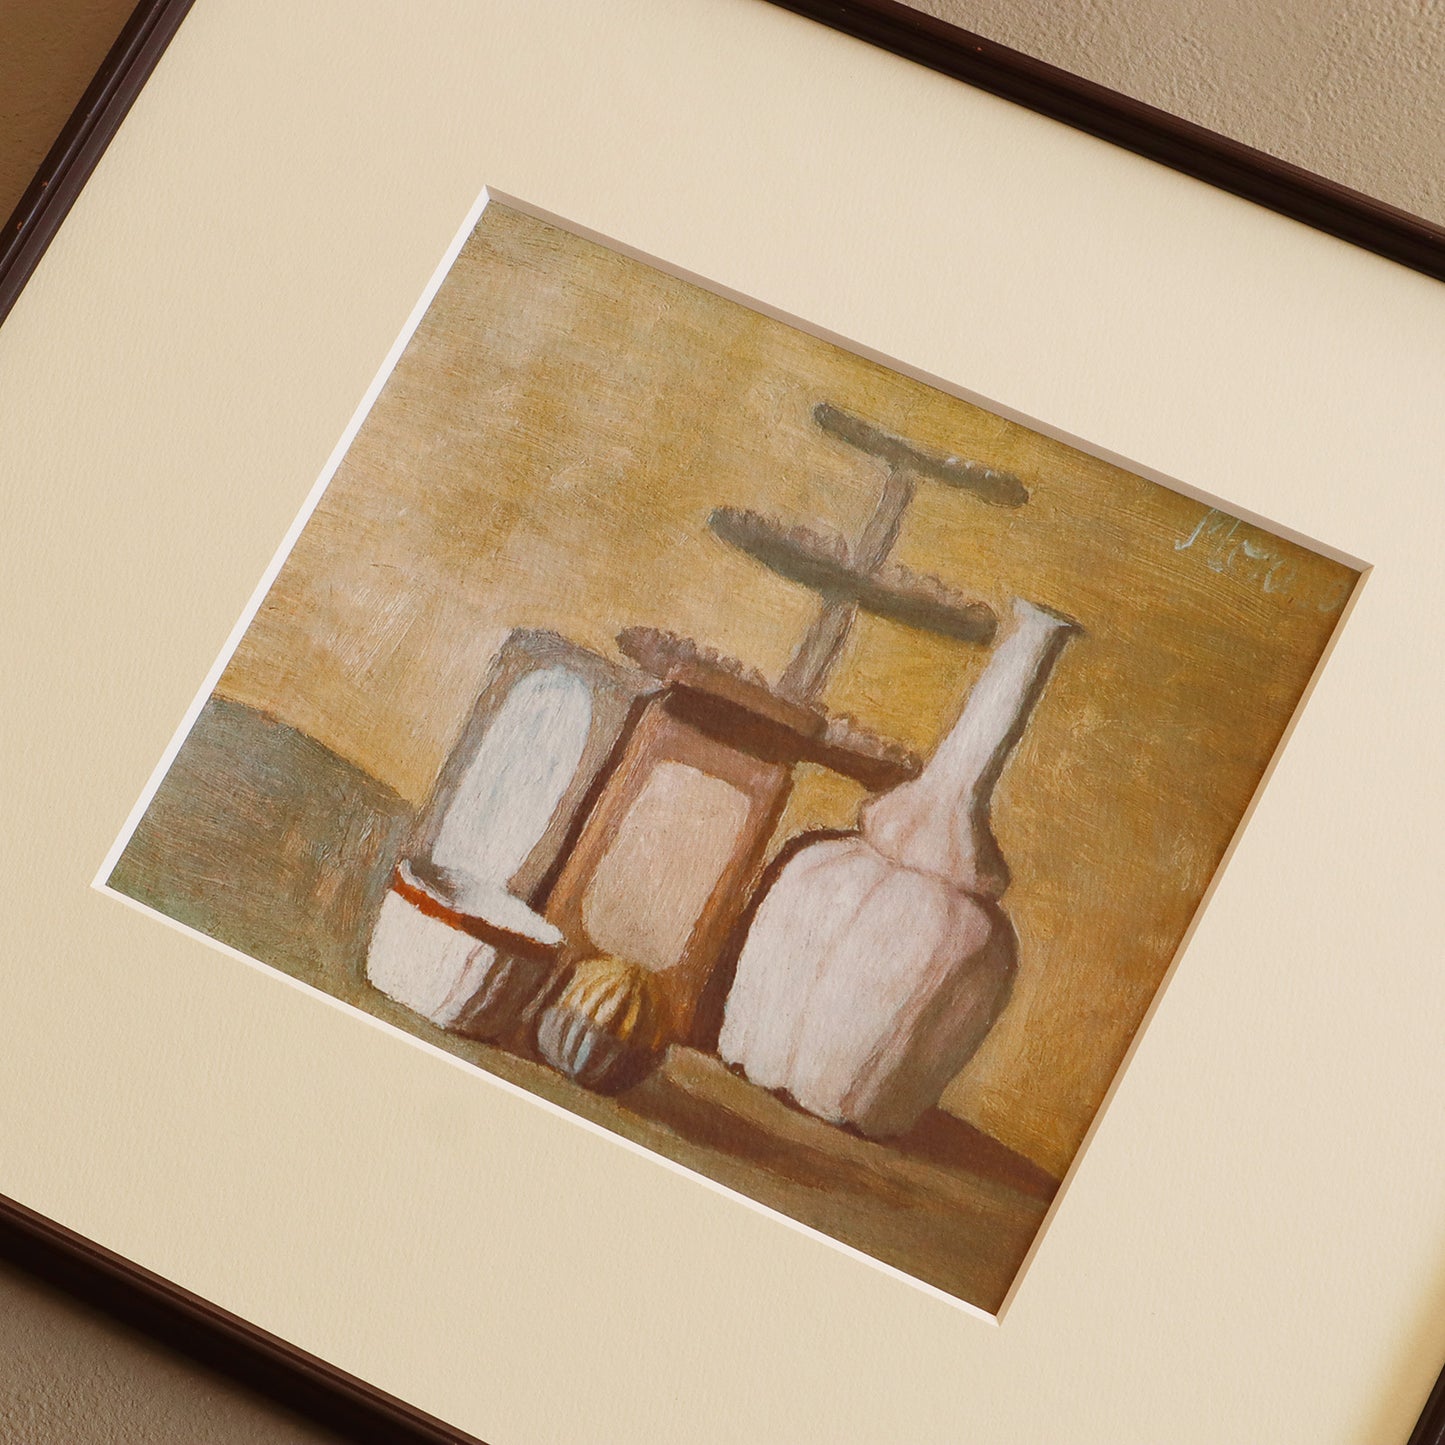 ジョルジョ・モランディ 「静物 1948」アートポスター（フレーム付き） / Giorgio Morandi “Still Life 1948” Art Frame